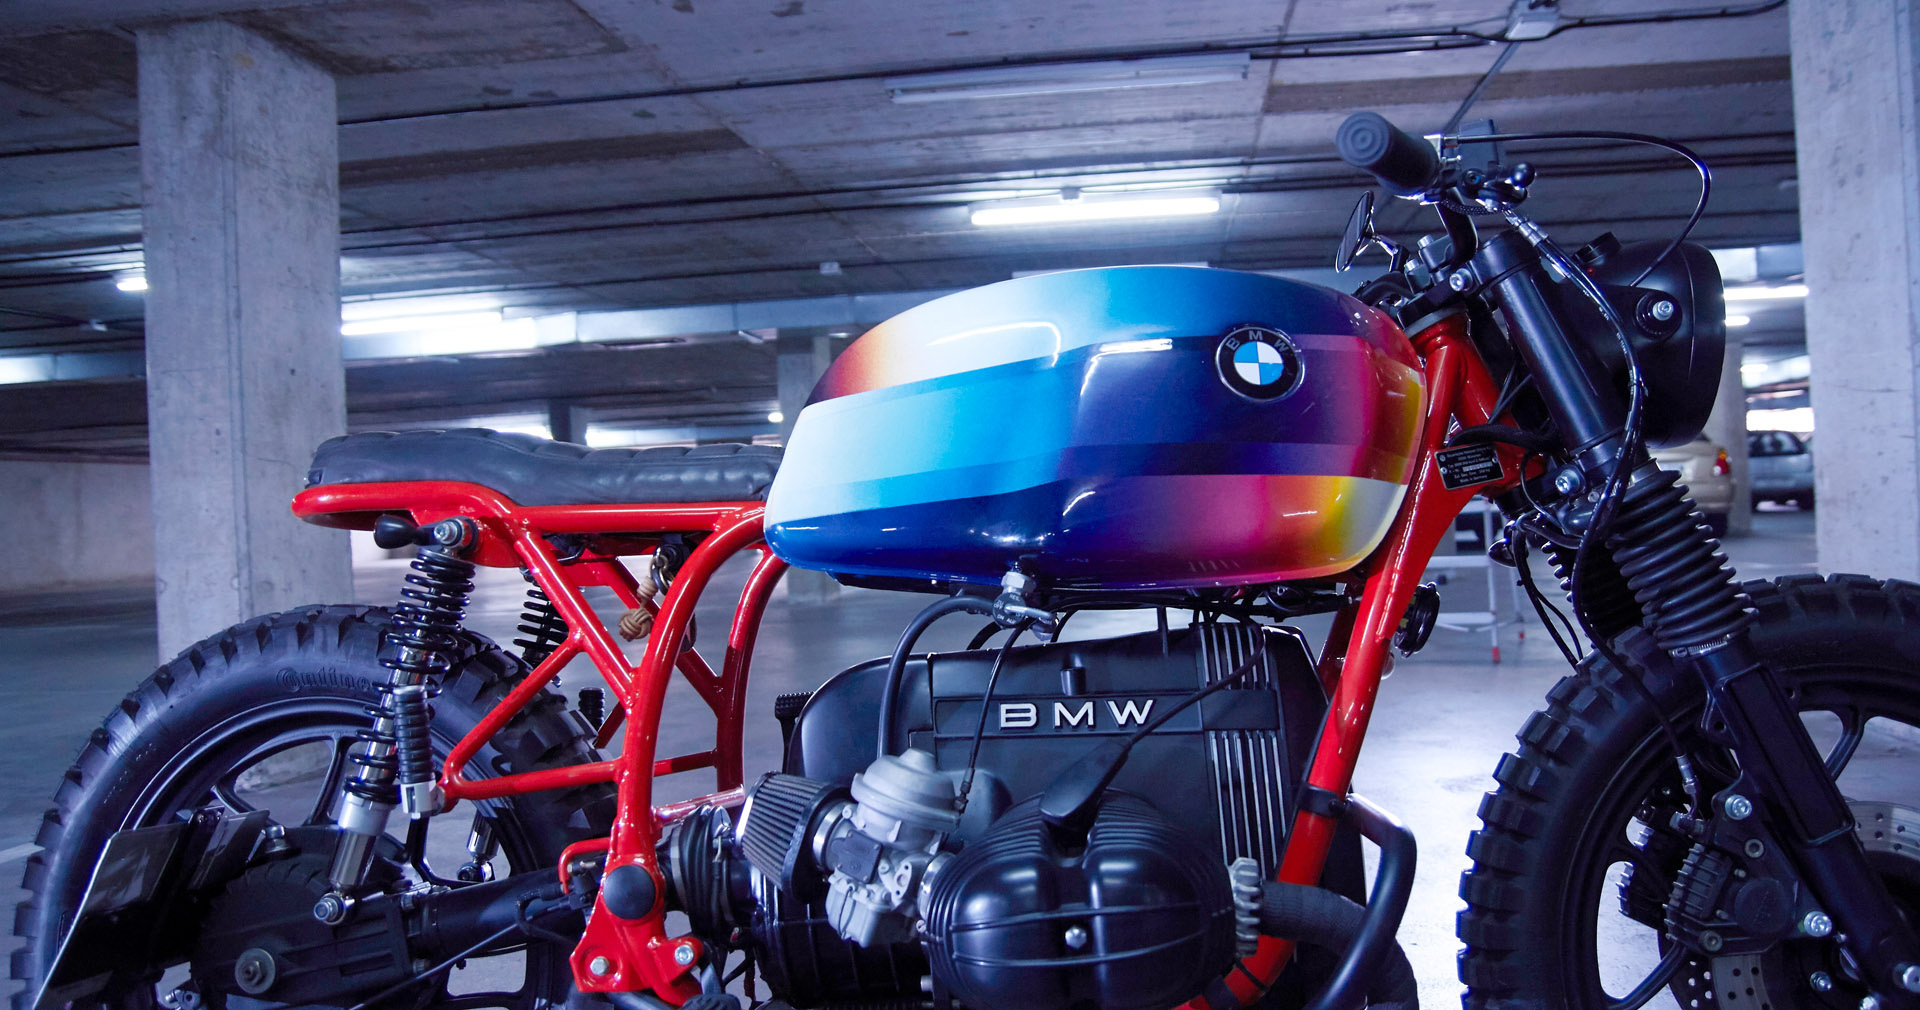 CRD93 BMWR65 – The Art Bike